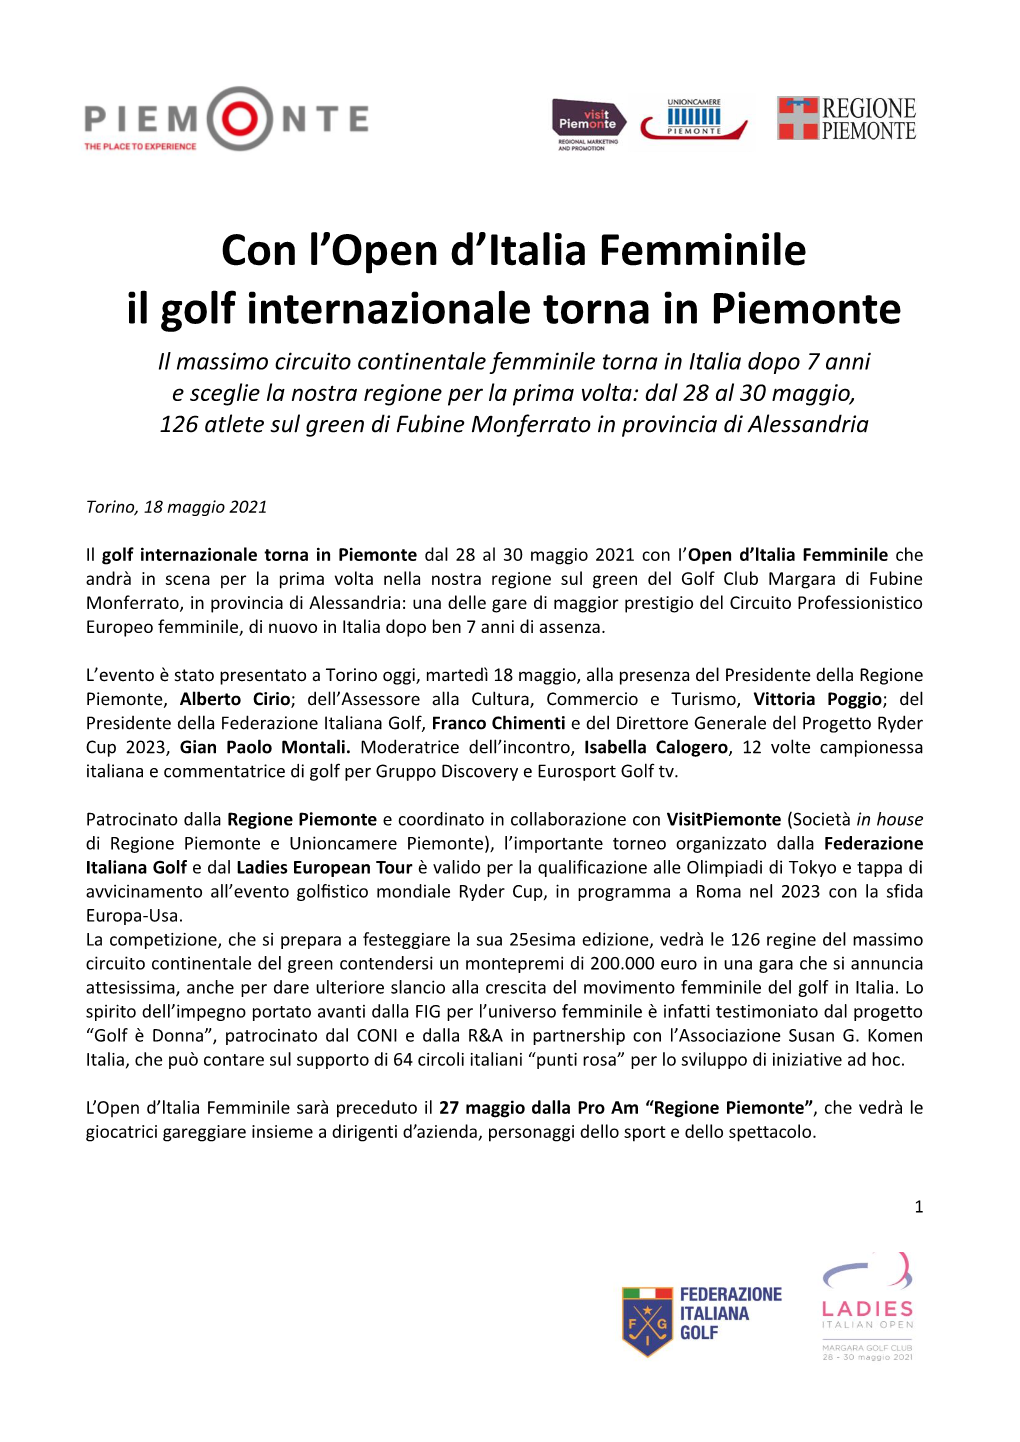 Con L'open D'italia Femminile Il Golf Internazionale Torna in Piemonte